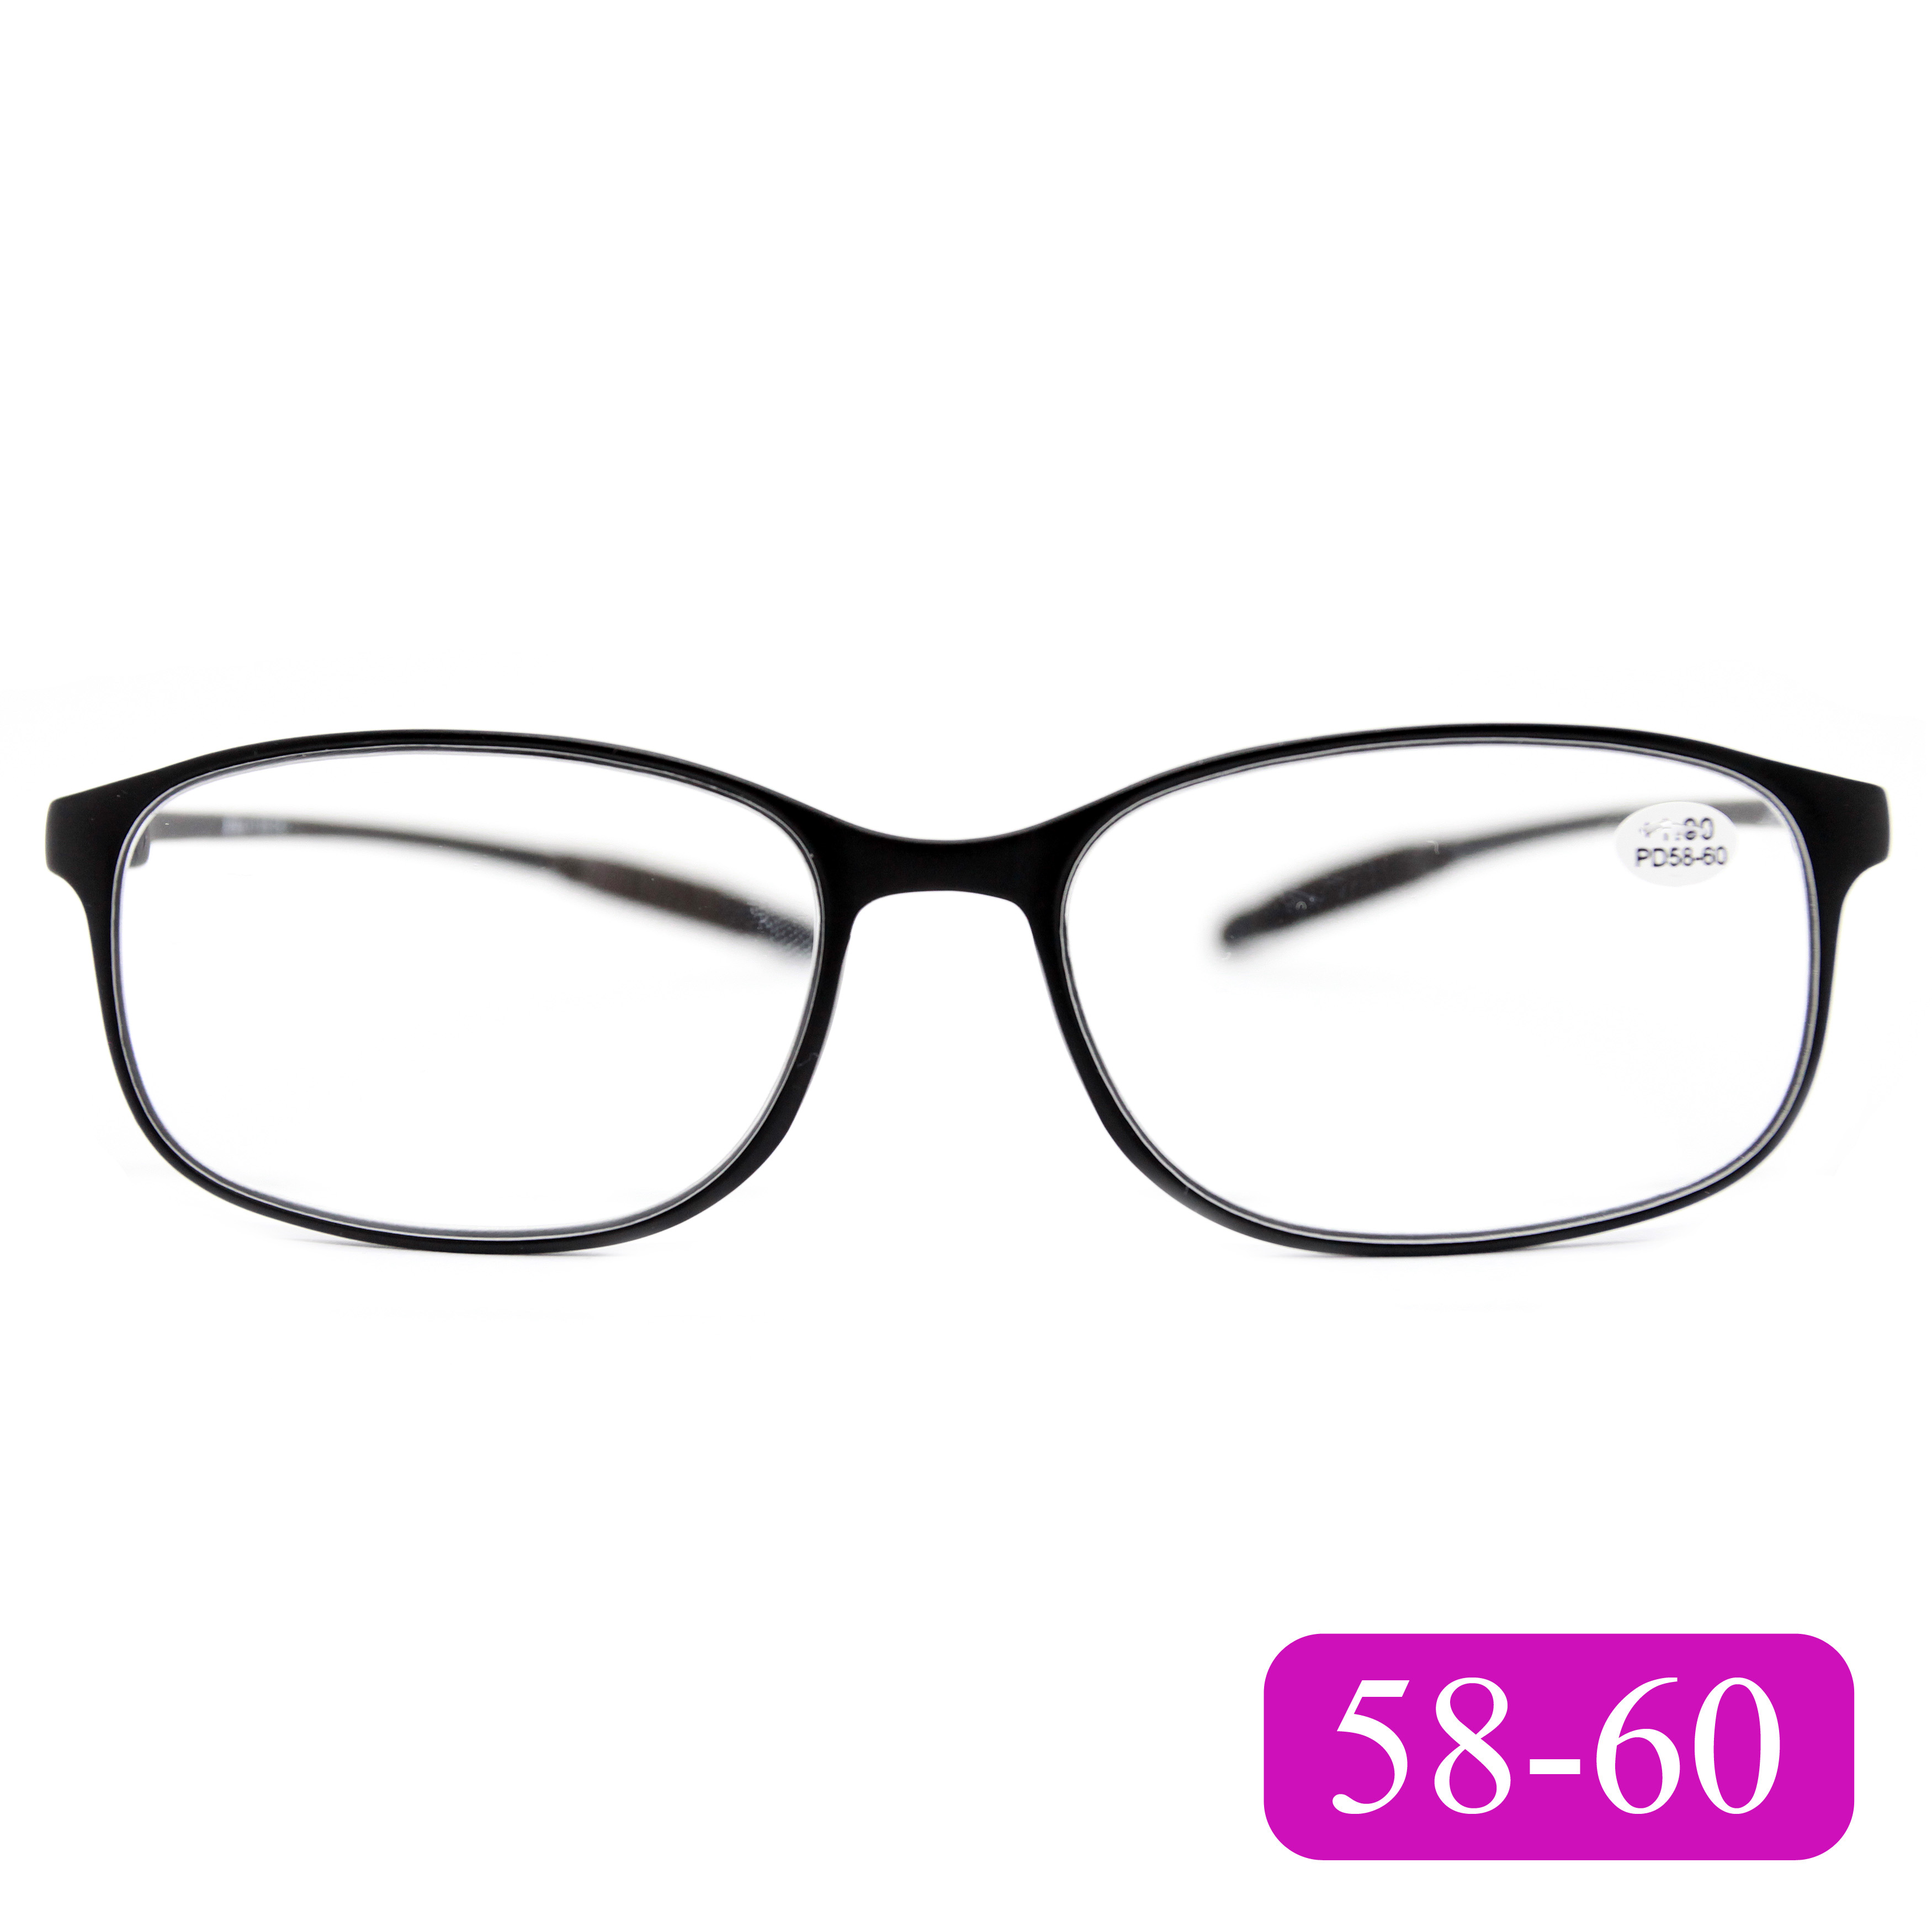 Готовые очки карбоновые TR259 +3,50, для чтения, без футляра, черный, РЦ 58-60